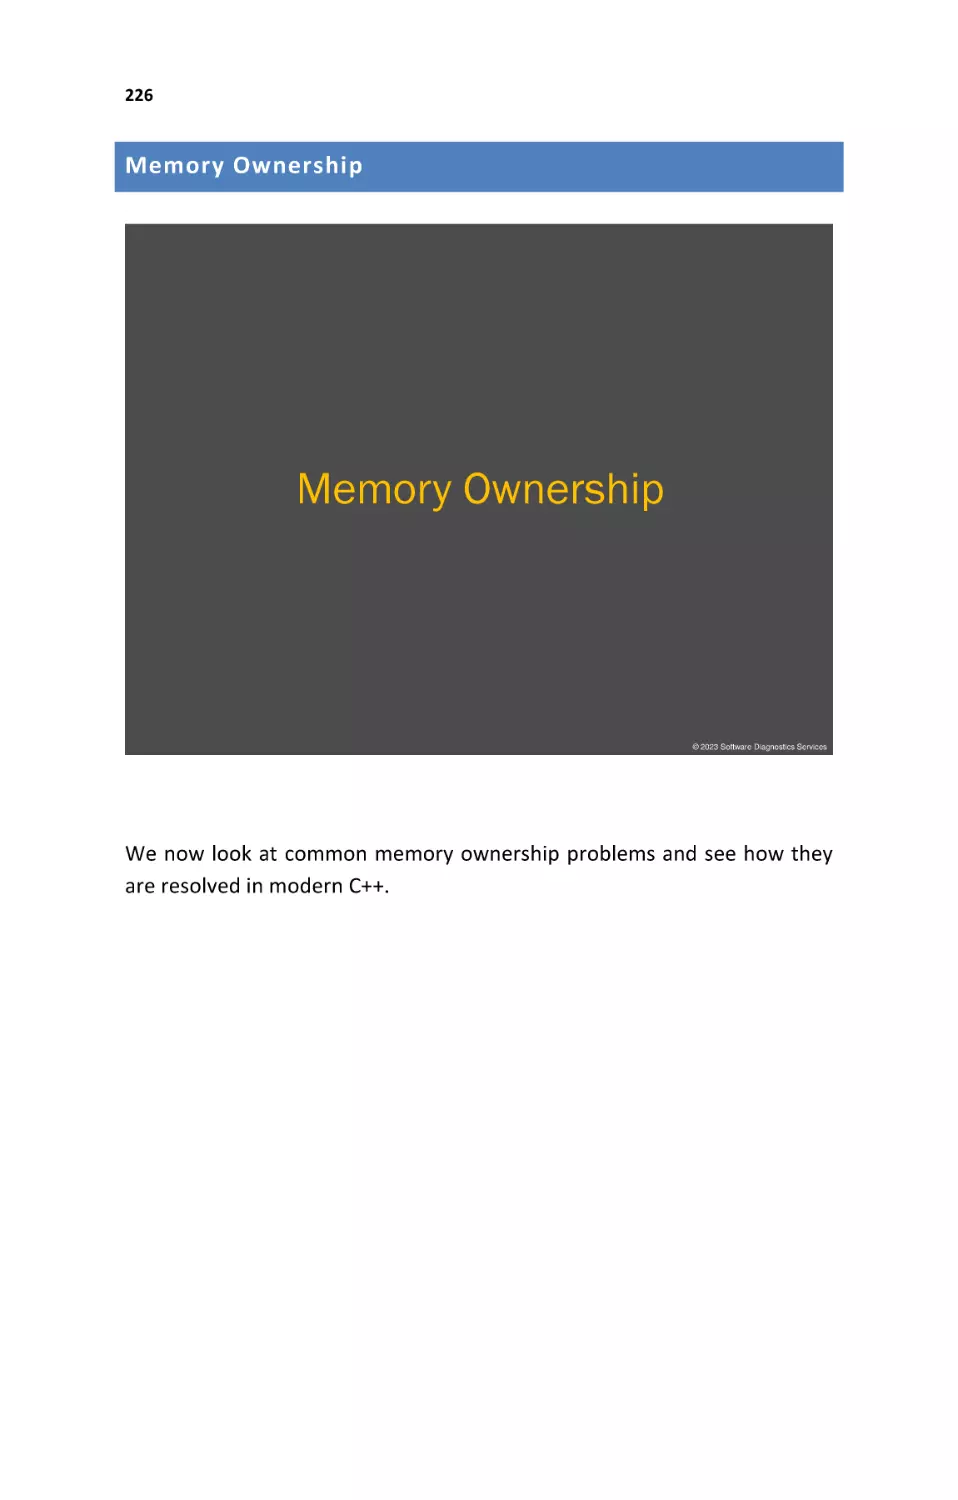 Memory Ownership